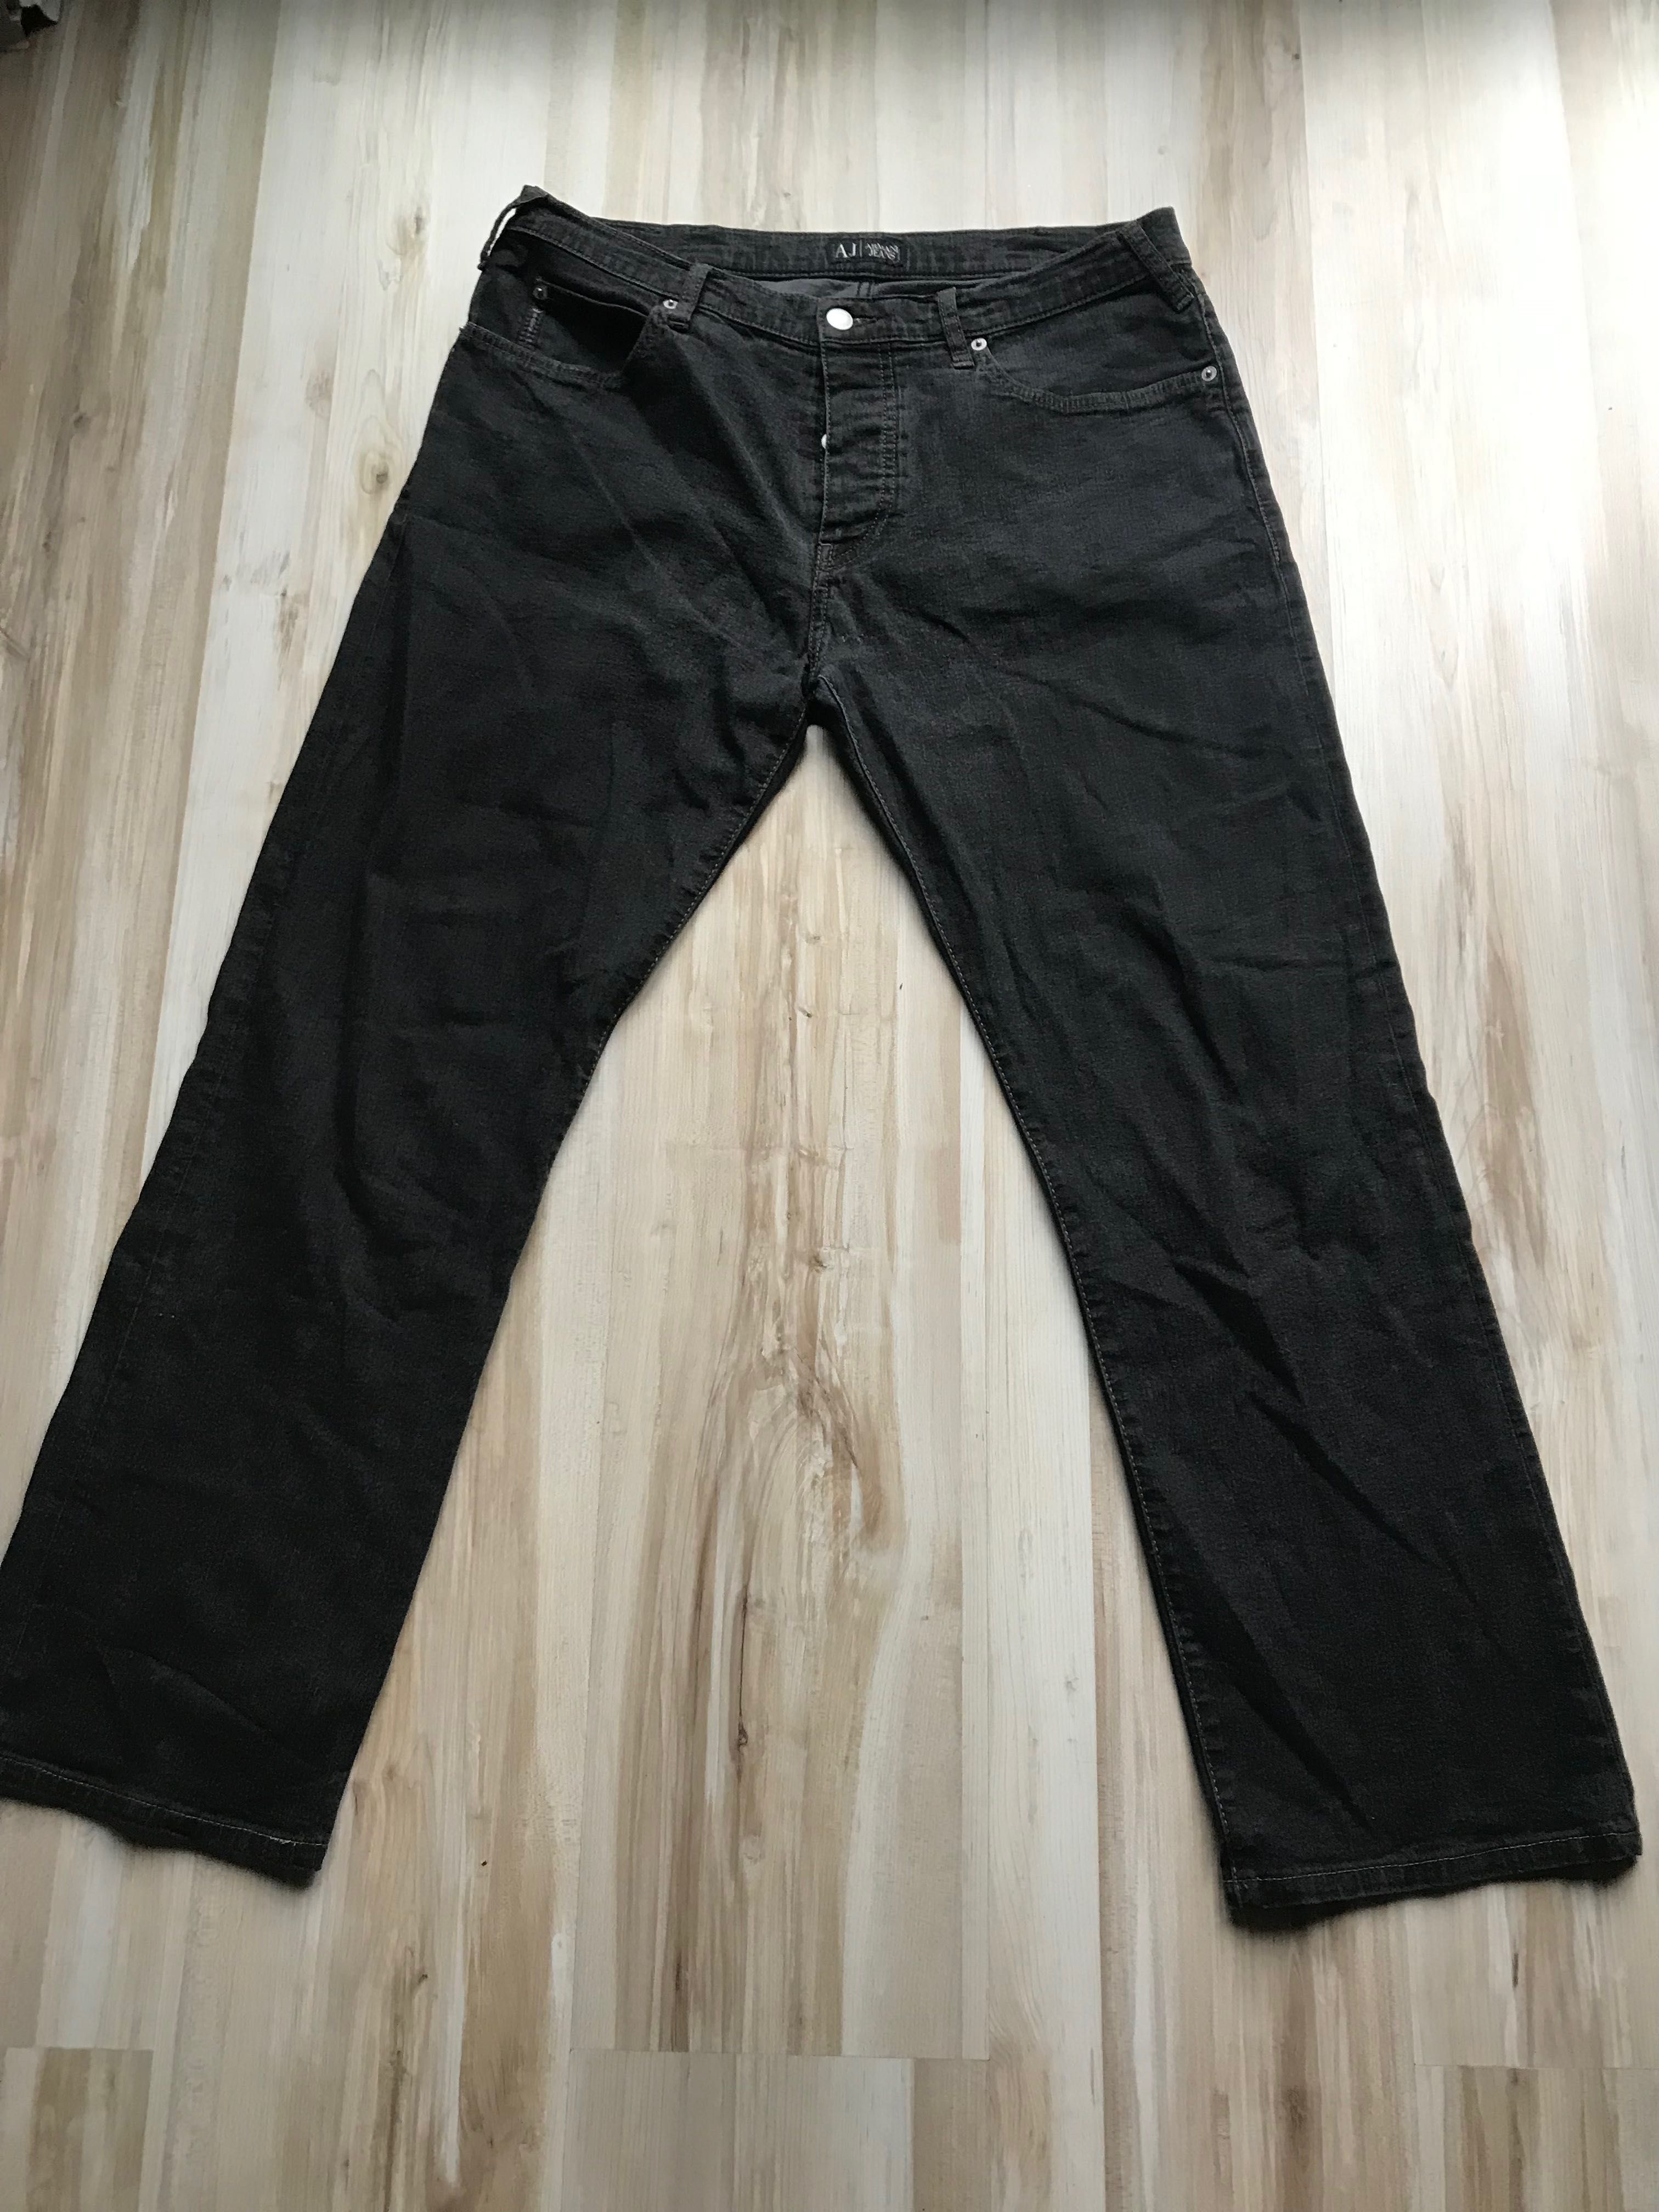 Spodnie Armani Jeans   36